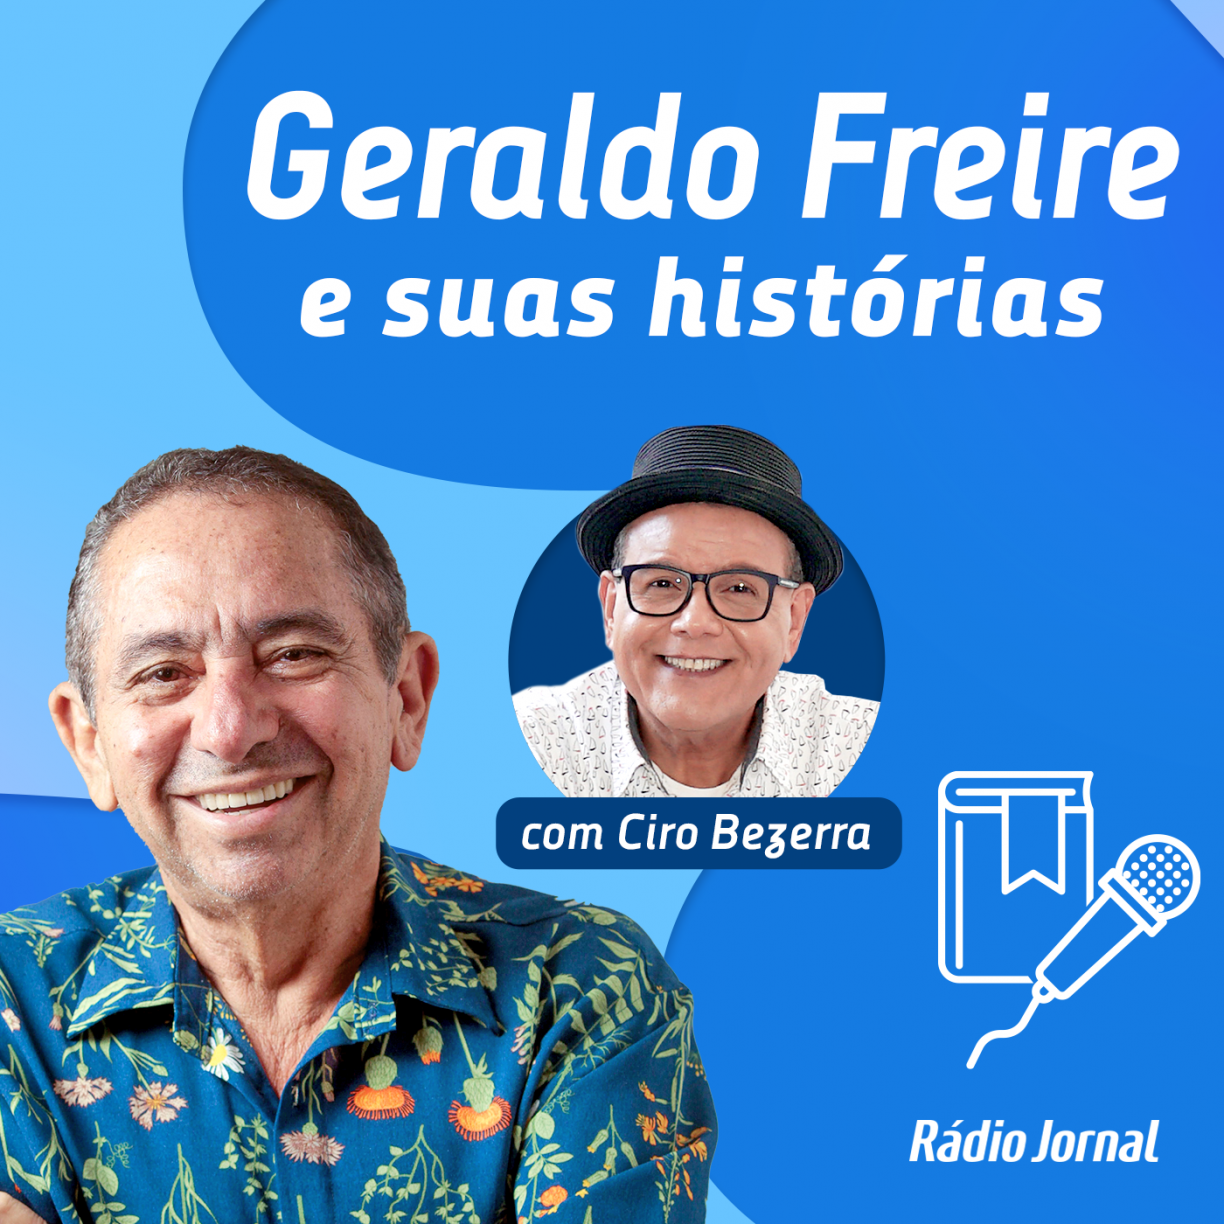 #9 Os bastidores da biografia sobre a vida de Geraldo Freire 